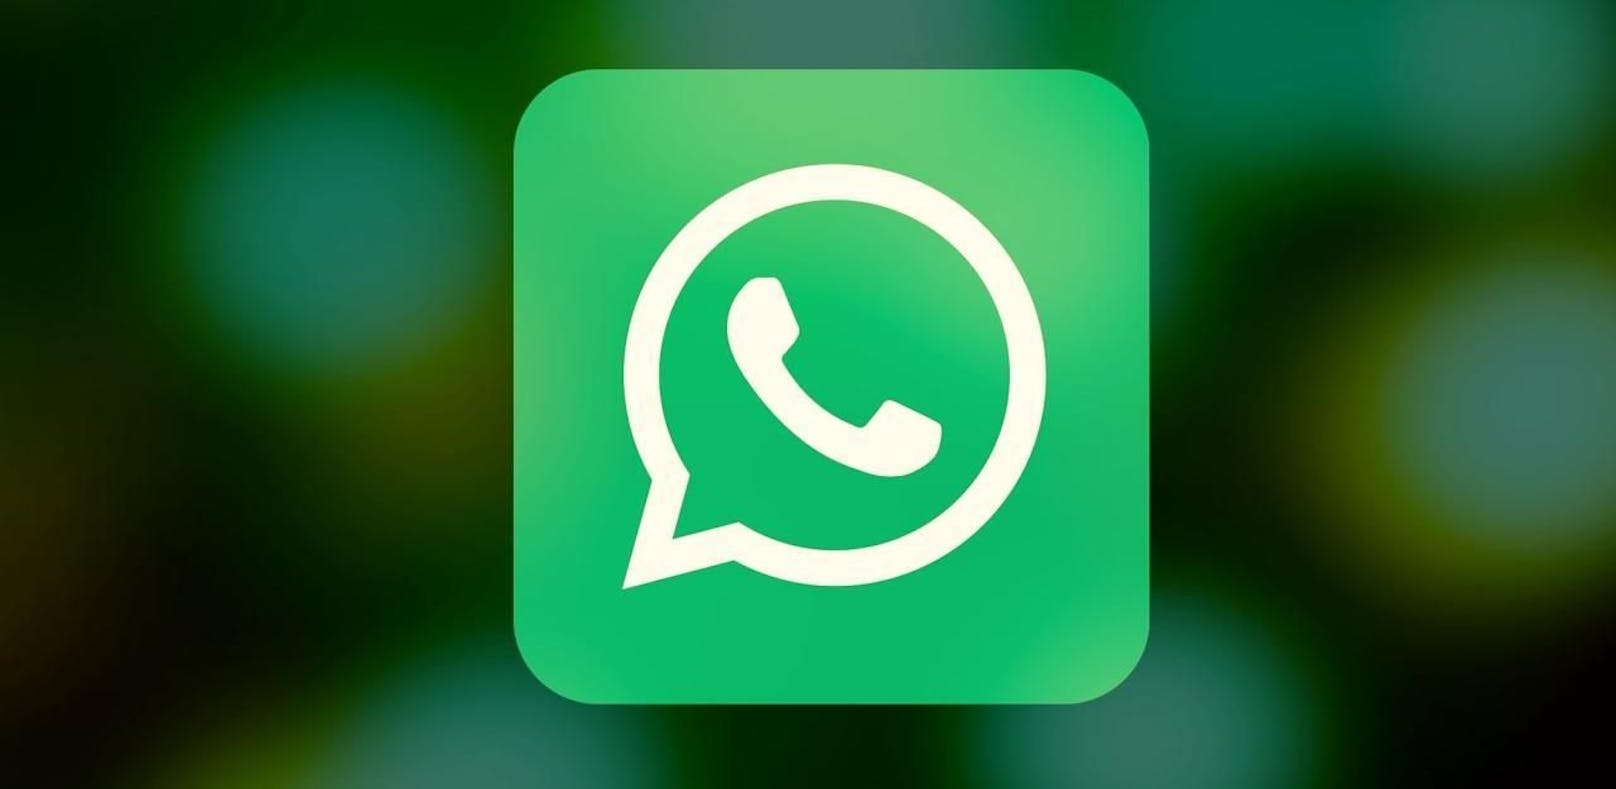 Wir stellen sechs neue Funktionen vor, die auf dich bald in WhatsApp zukommen.